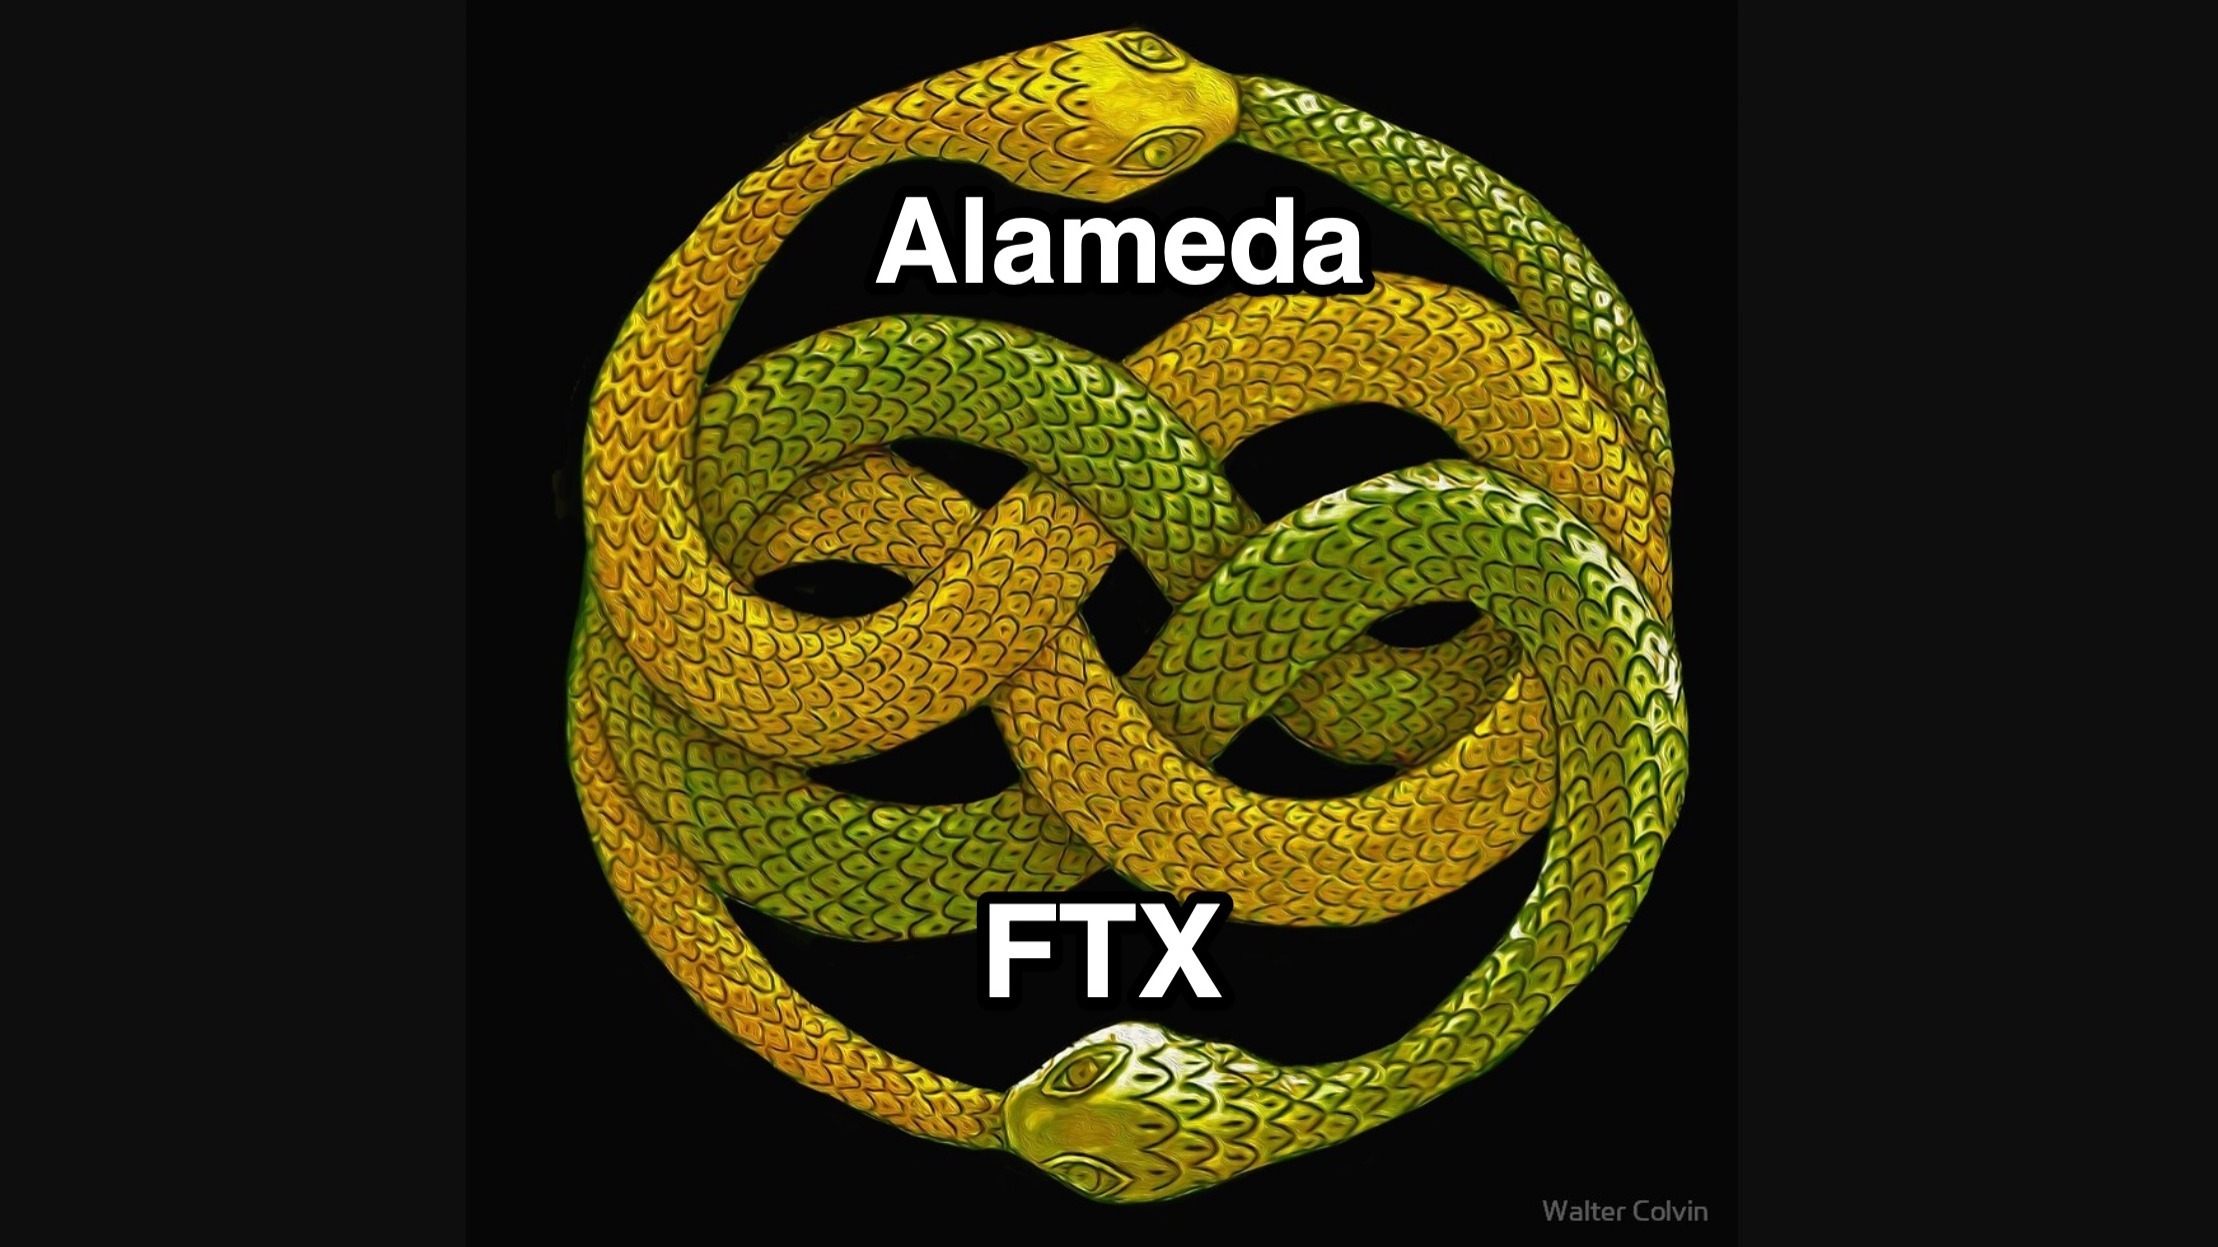 Toàn Cảnh Danh Mục Đầu Tư 54 Tỷ Usd Của Ftx Và Alameda Research